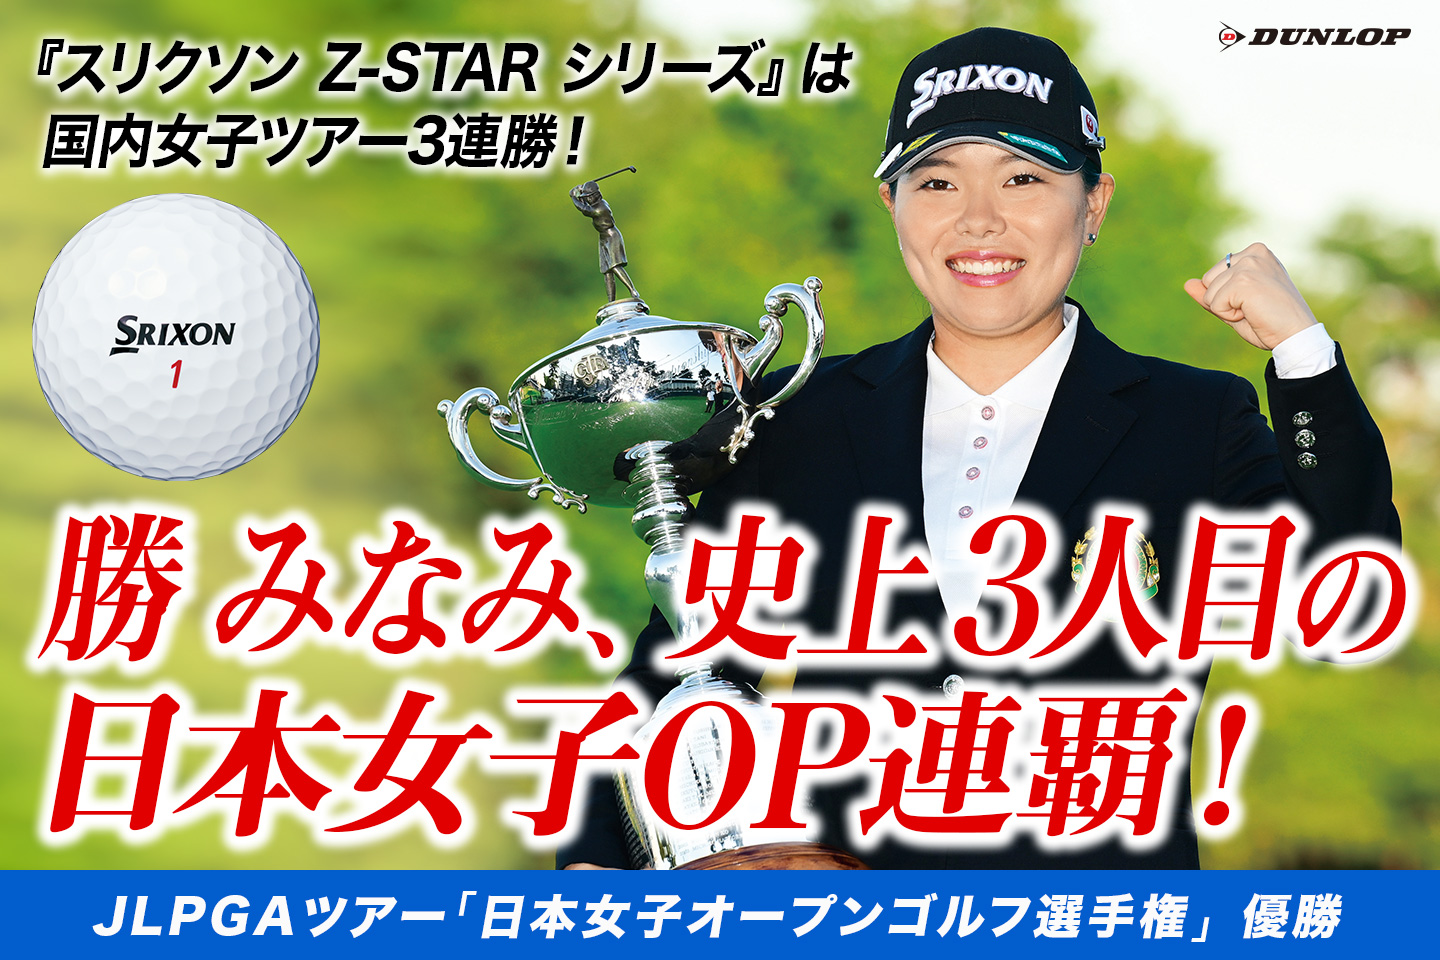 勝 みなみ、3打差を逆転し「日本女子オープンゴルフ選手権」を連覇！ ～『スリクソン Z-STAR シリーズ』は国内女子ツアー3週連続V！ ～